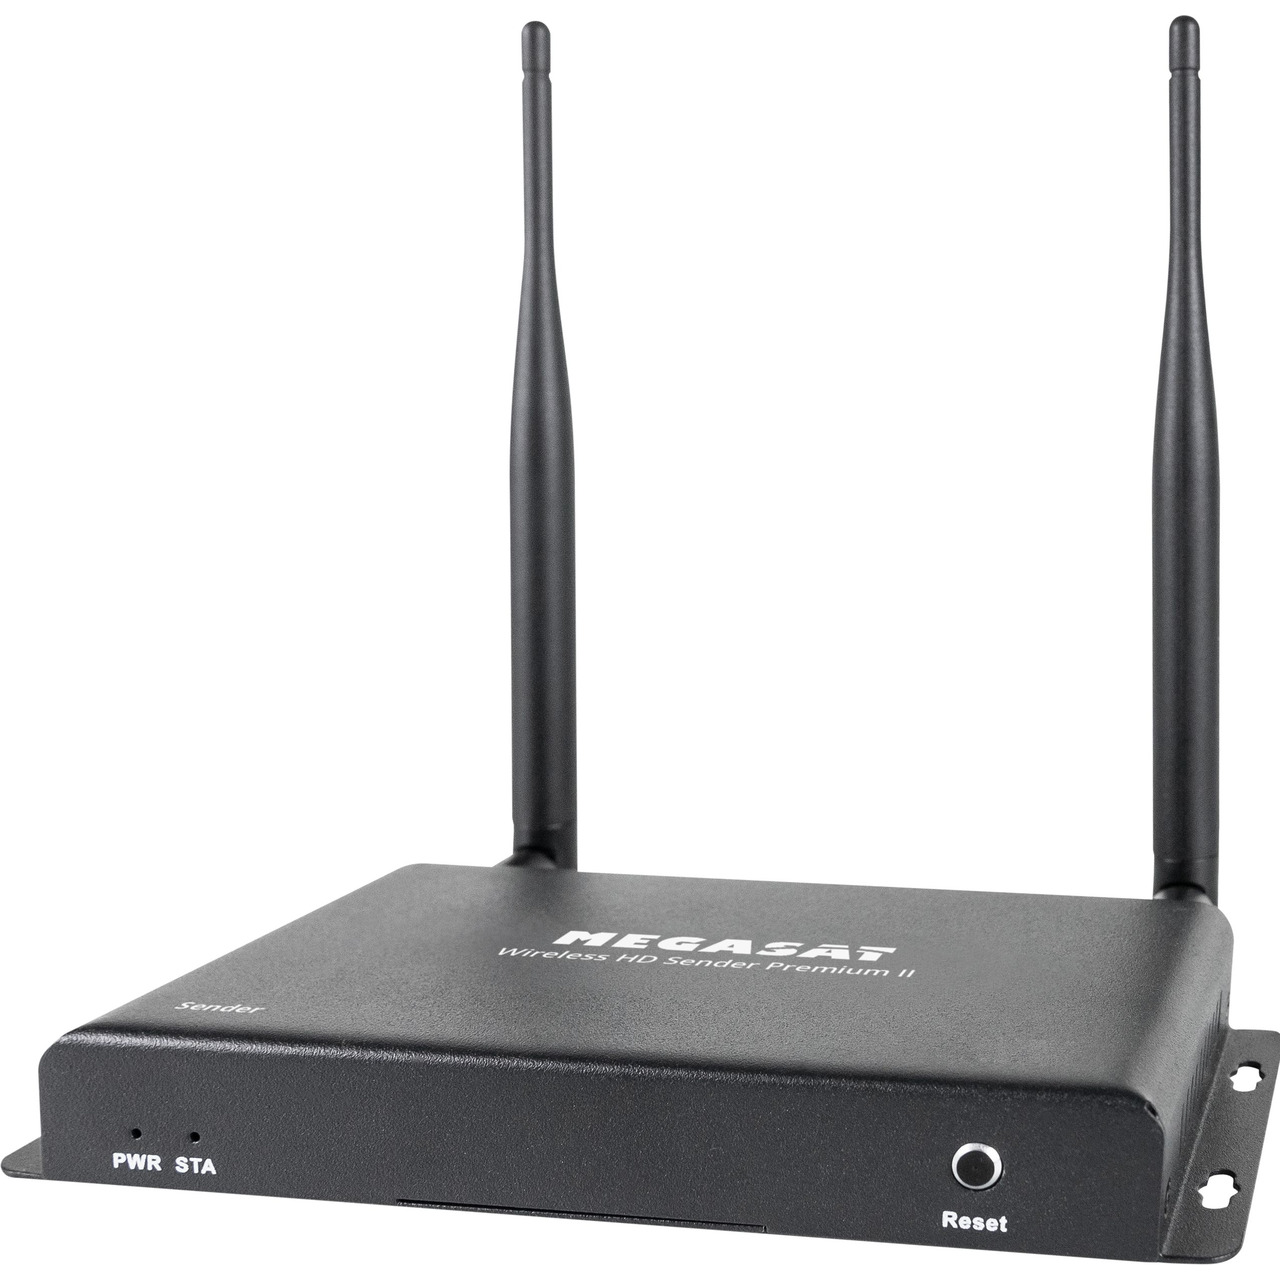 Megasat HDMI-Funkbertragungssystem Wireless HD Sender Premium II- 5-8 GHz- bis zu 200 m Reichweite unter Multimedia